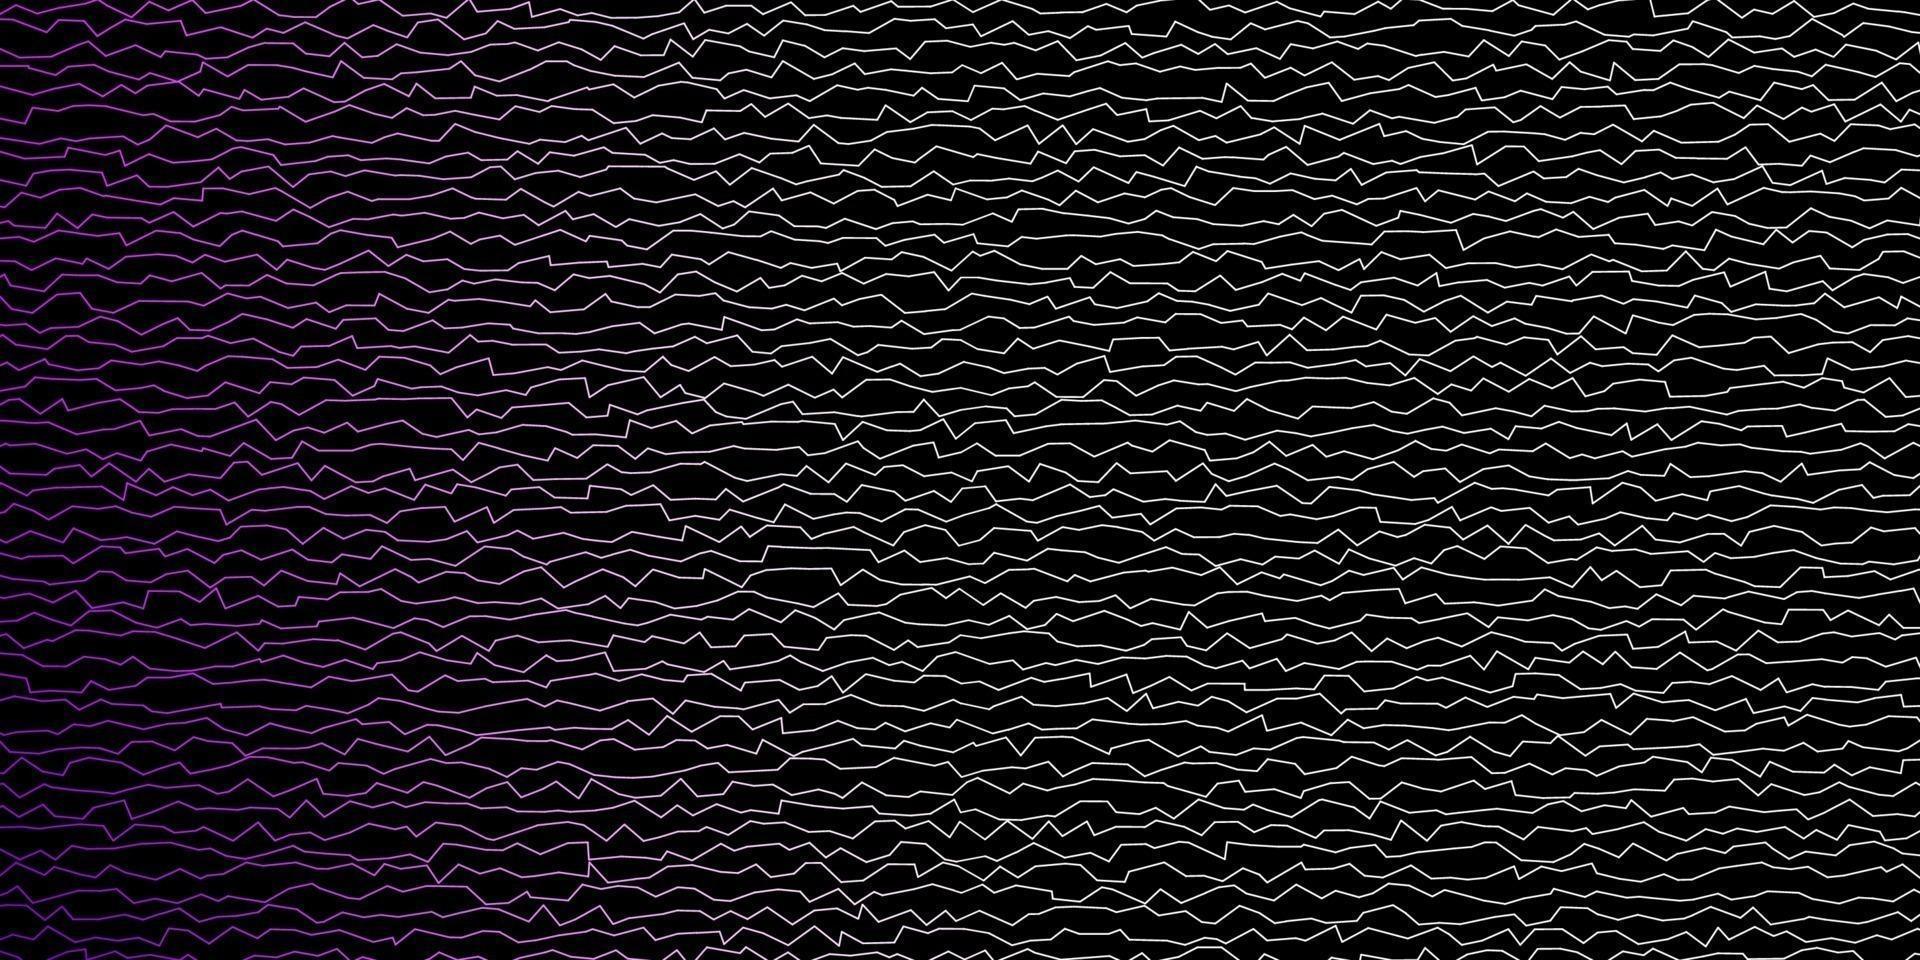 mörkrosa vektormönster med sneda linjer. vektor